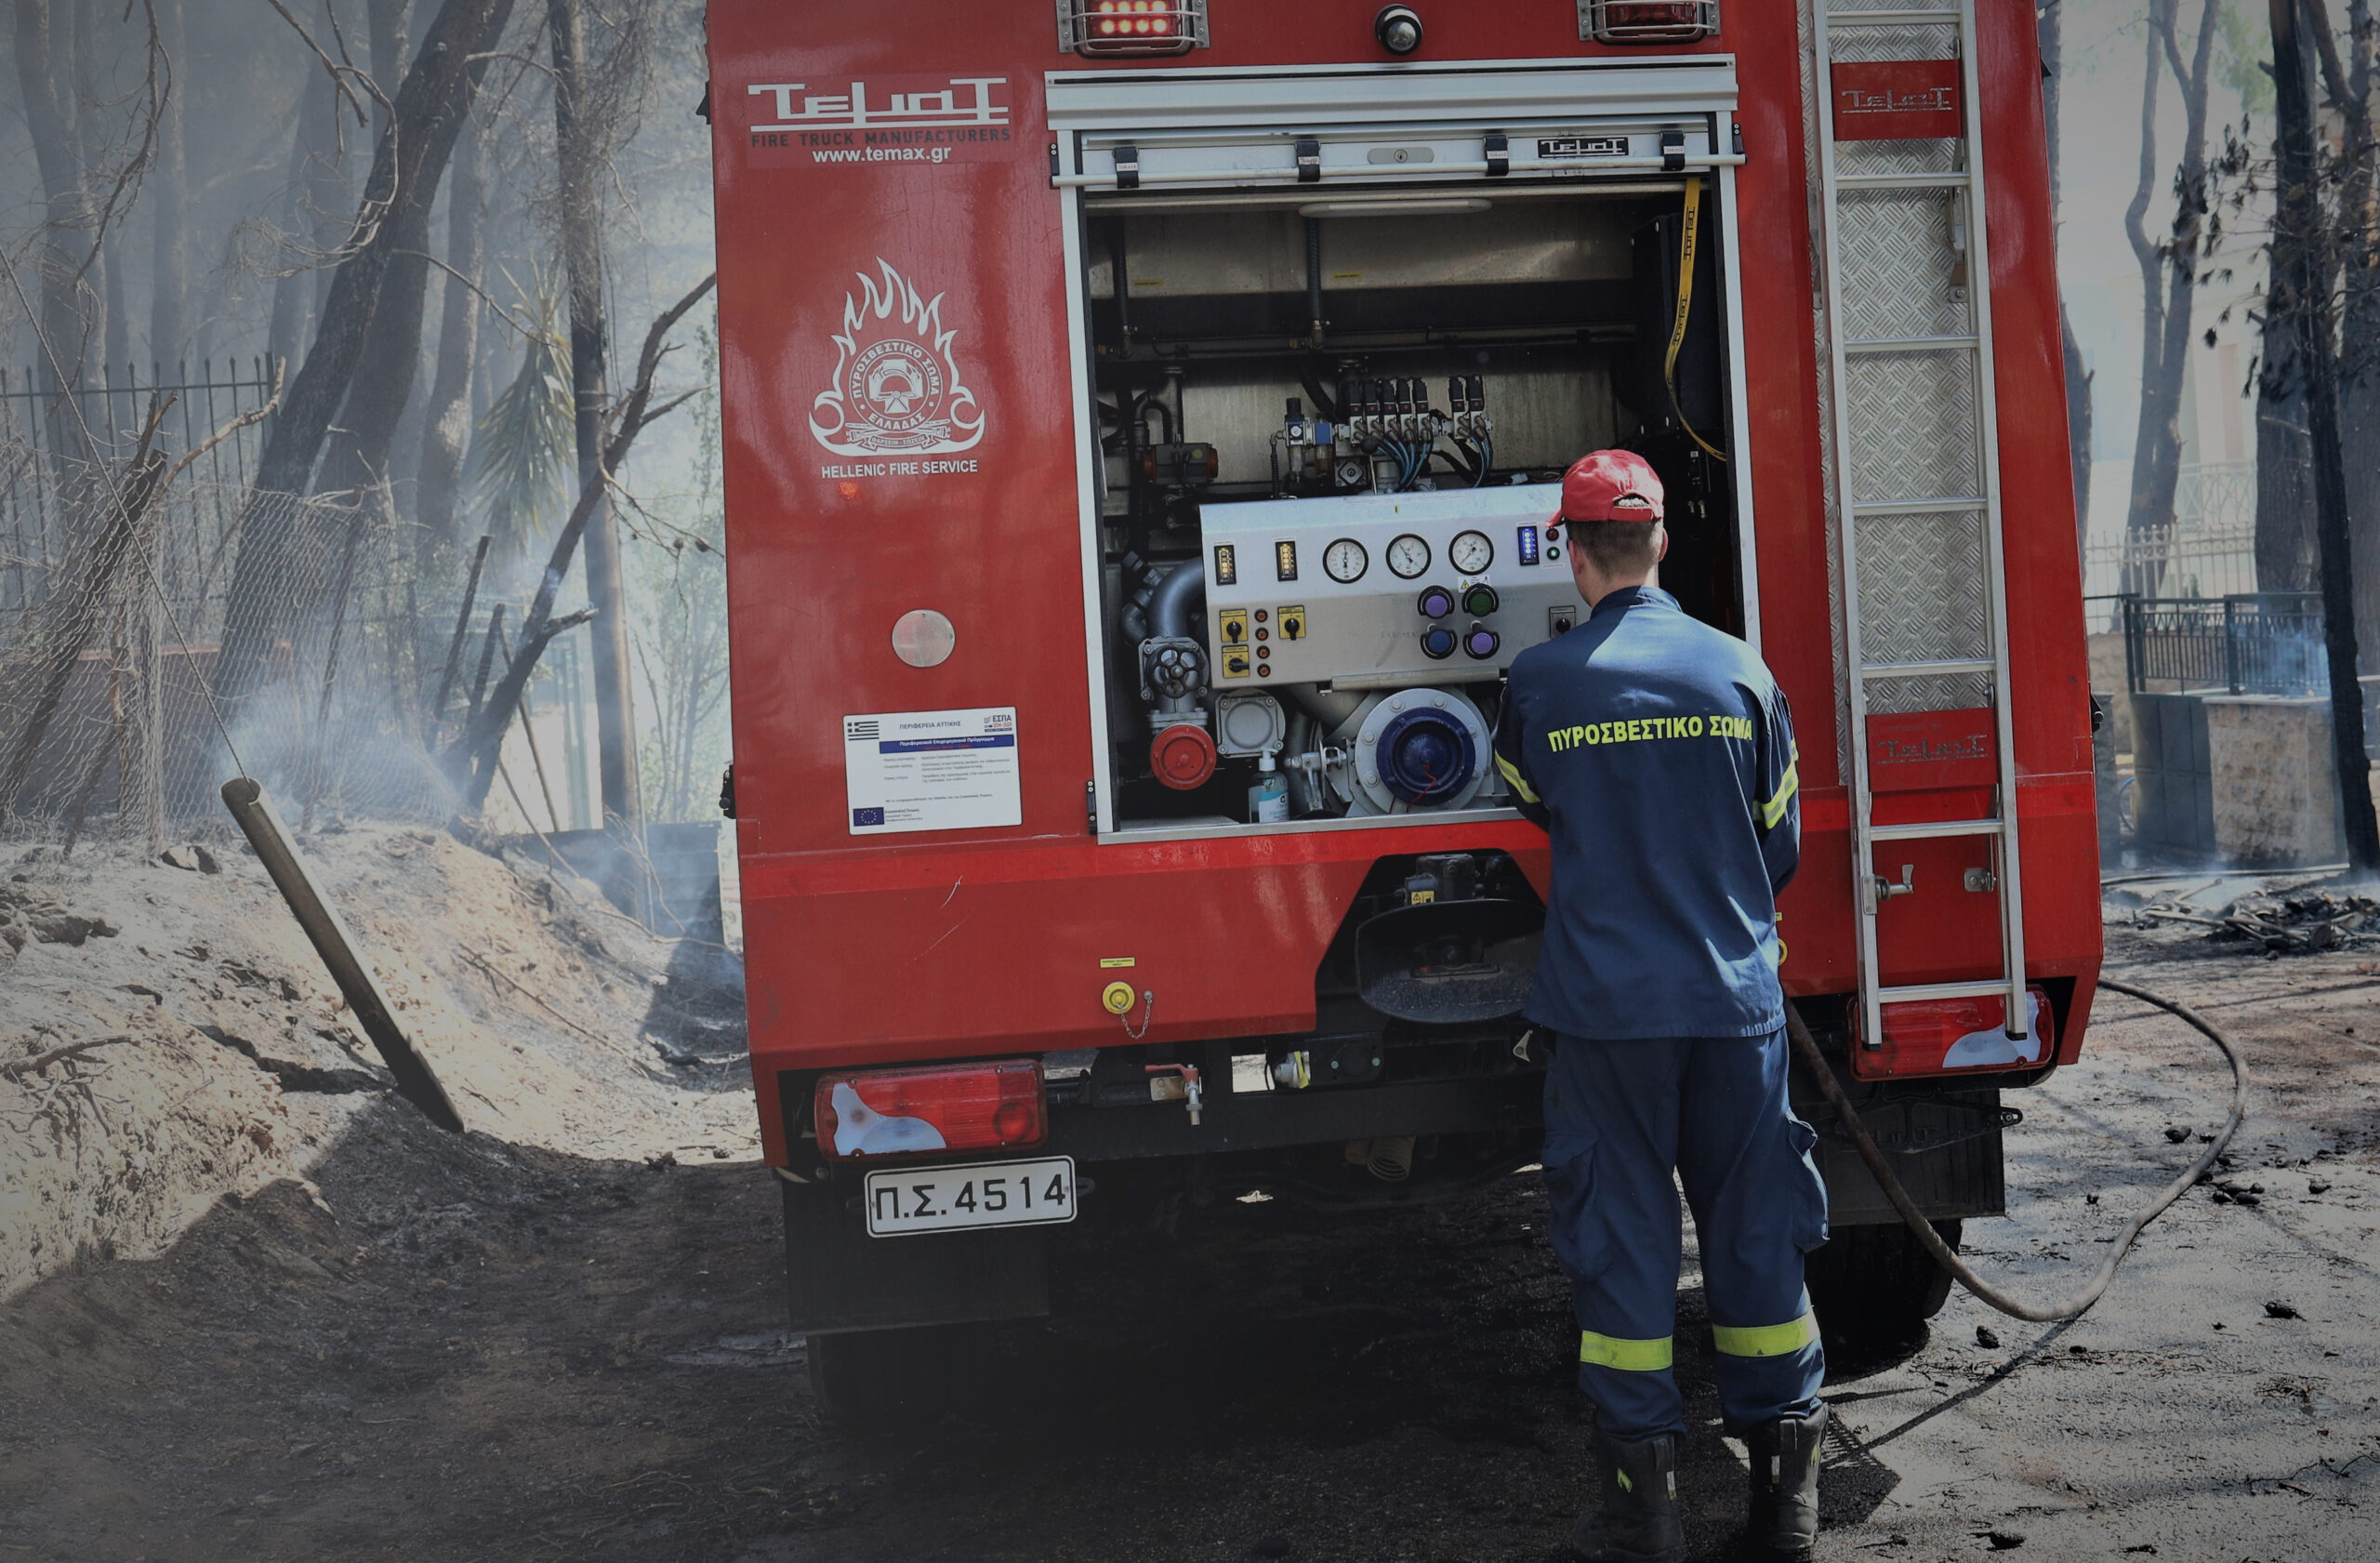 Πυροσβέστες από το Ναύπλιο έτρεξαν για να σβήσουν φωτιά στη Δήμαινα